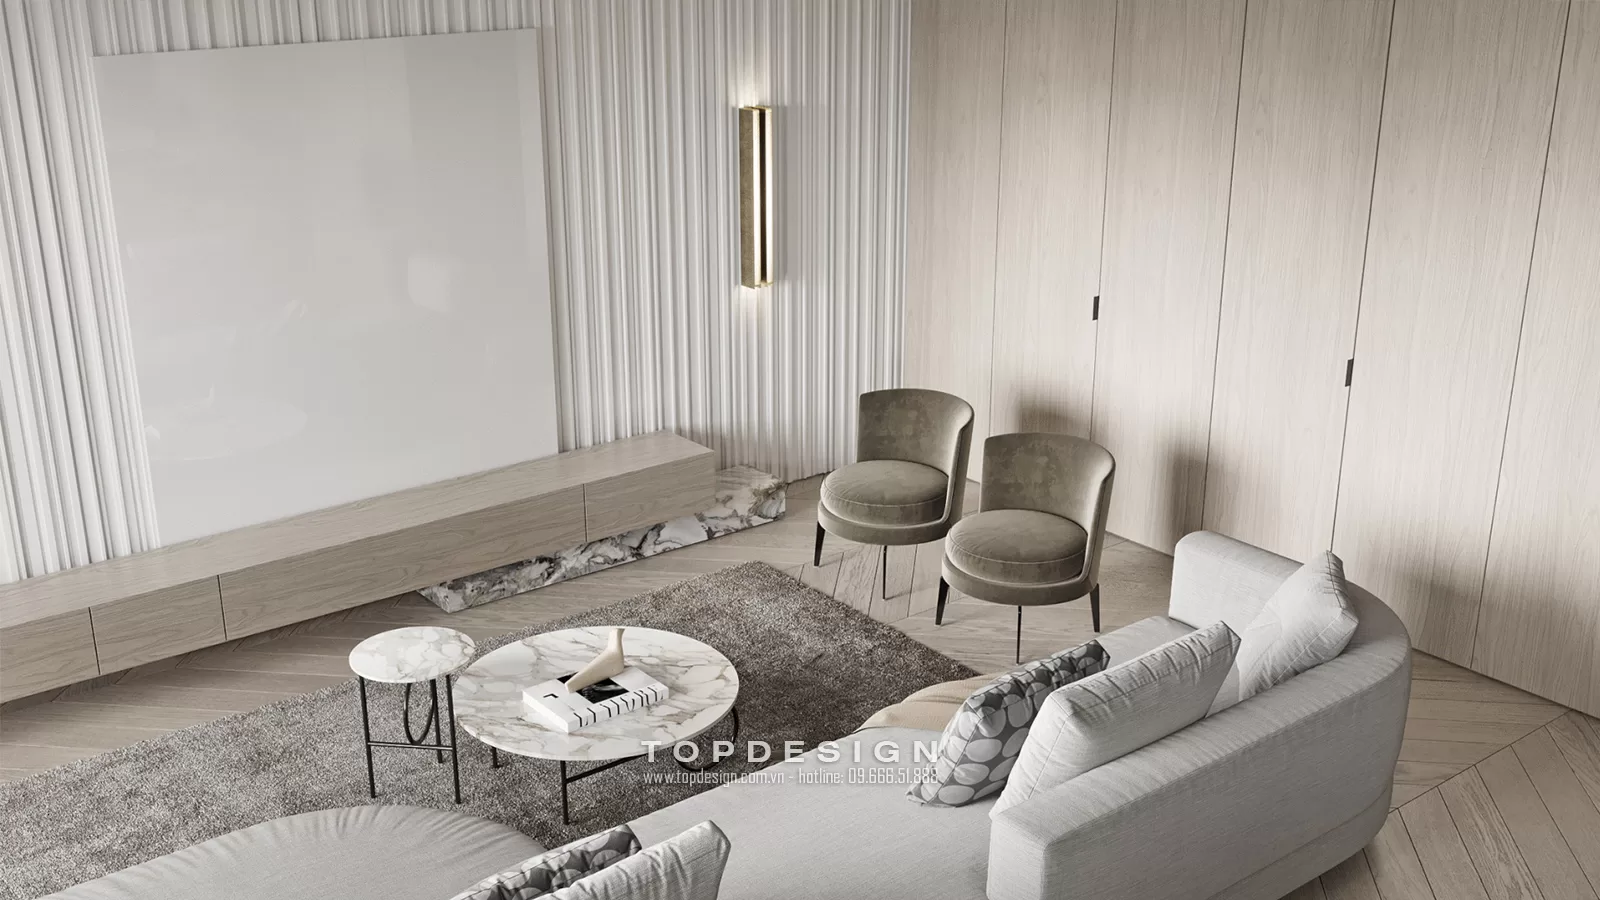 Thiết kế nội thất biệt thự phong cách Luxury - TOPDESIGN - 5